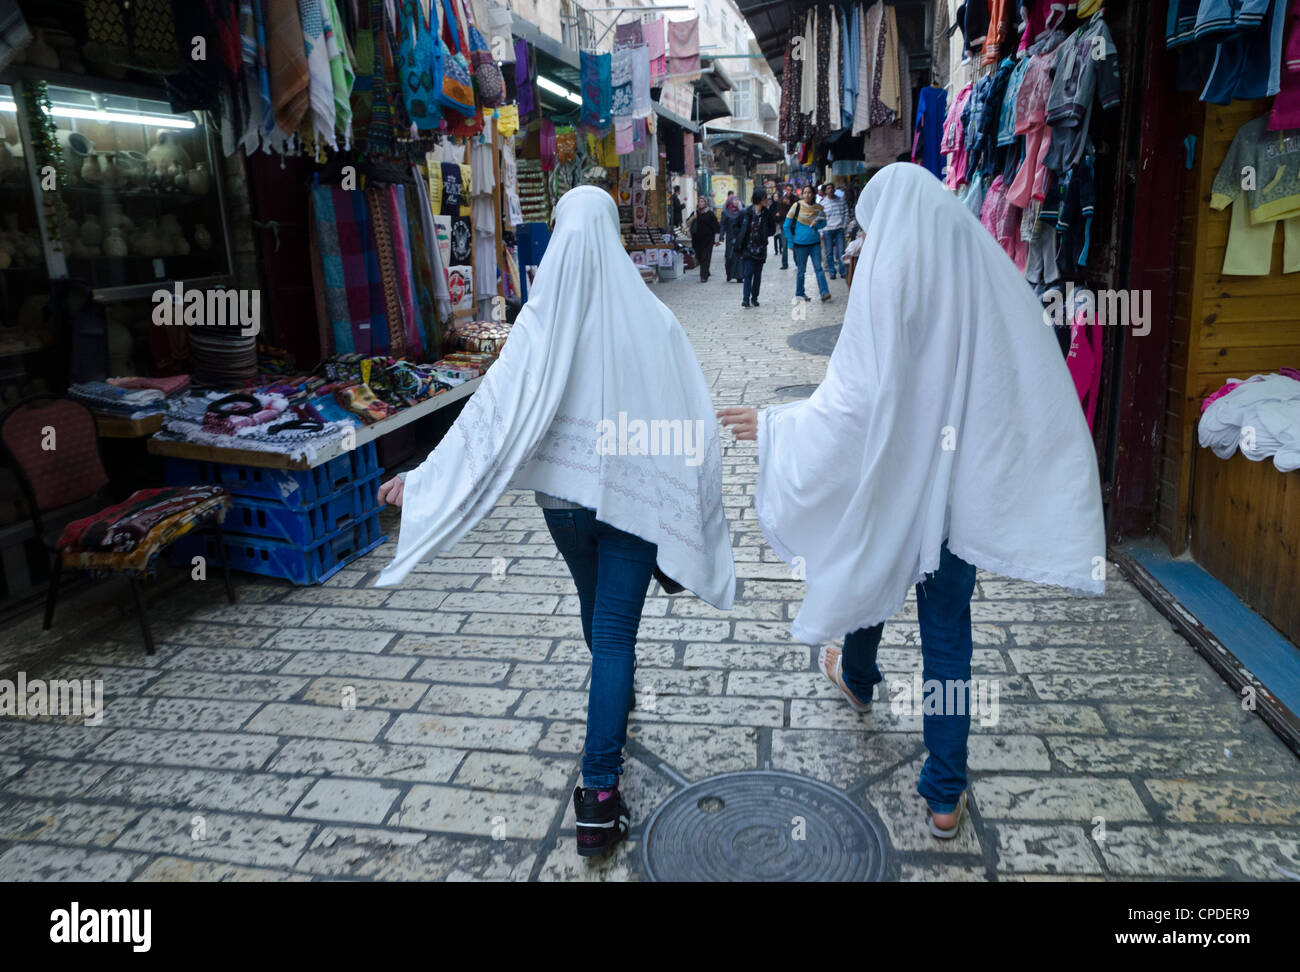 Zwei palästinensische weibliche Jugendliche einen Hijab zu tragen, auf dem Weg zum beten, Altstadt, Jerusalem, Israel, Nahost Stockfoto